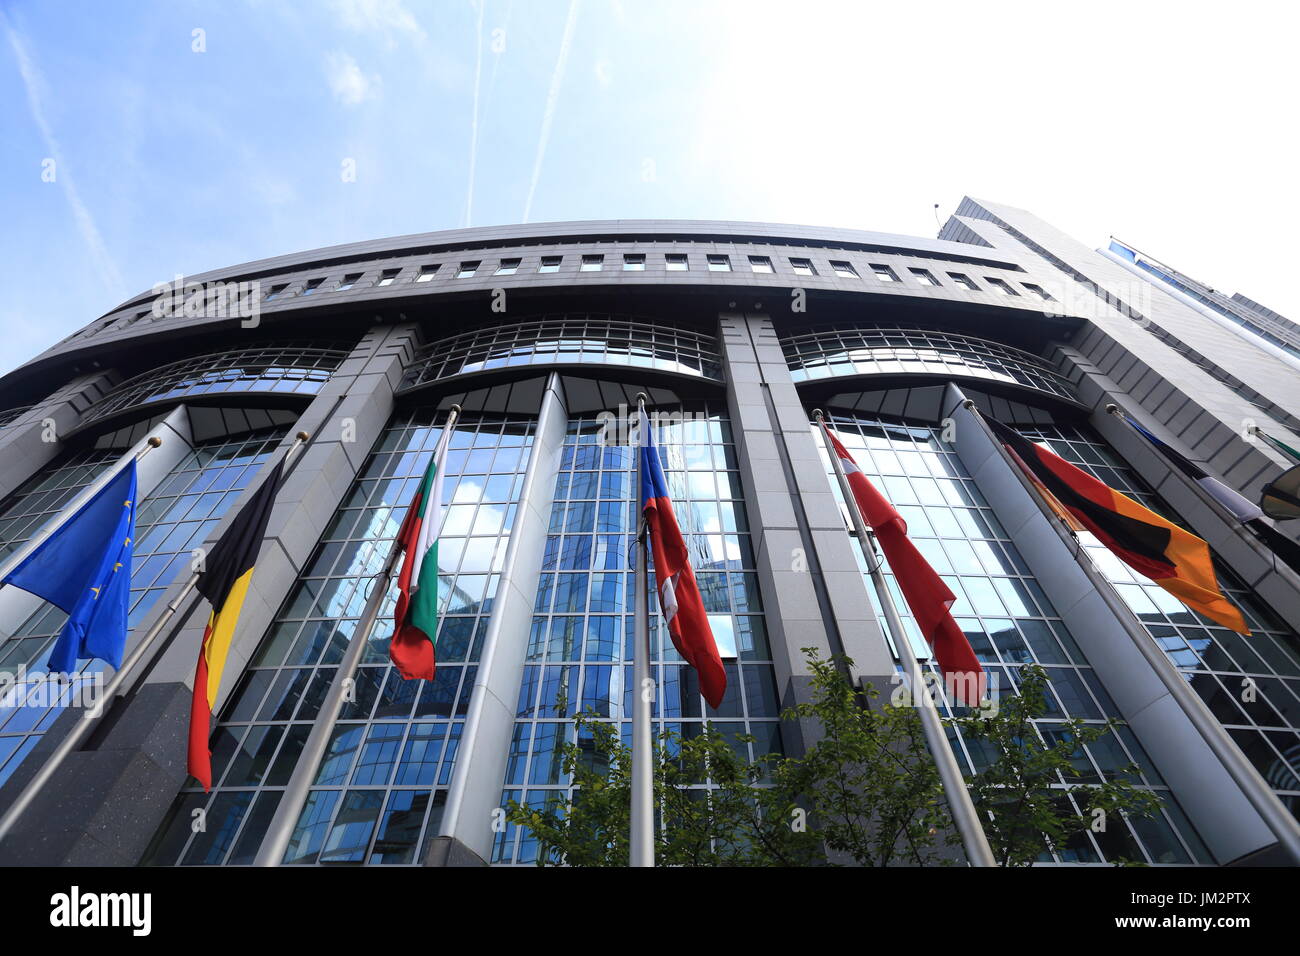 Brüssel, Belgien - 17. Juli 2017: Flaggen auf europäischen Parlamentsgebäude Hintergrund. Flaggen der EU-Länder gegenüber Fassade des Europäischen Parlaments Buil Stockfoto